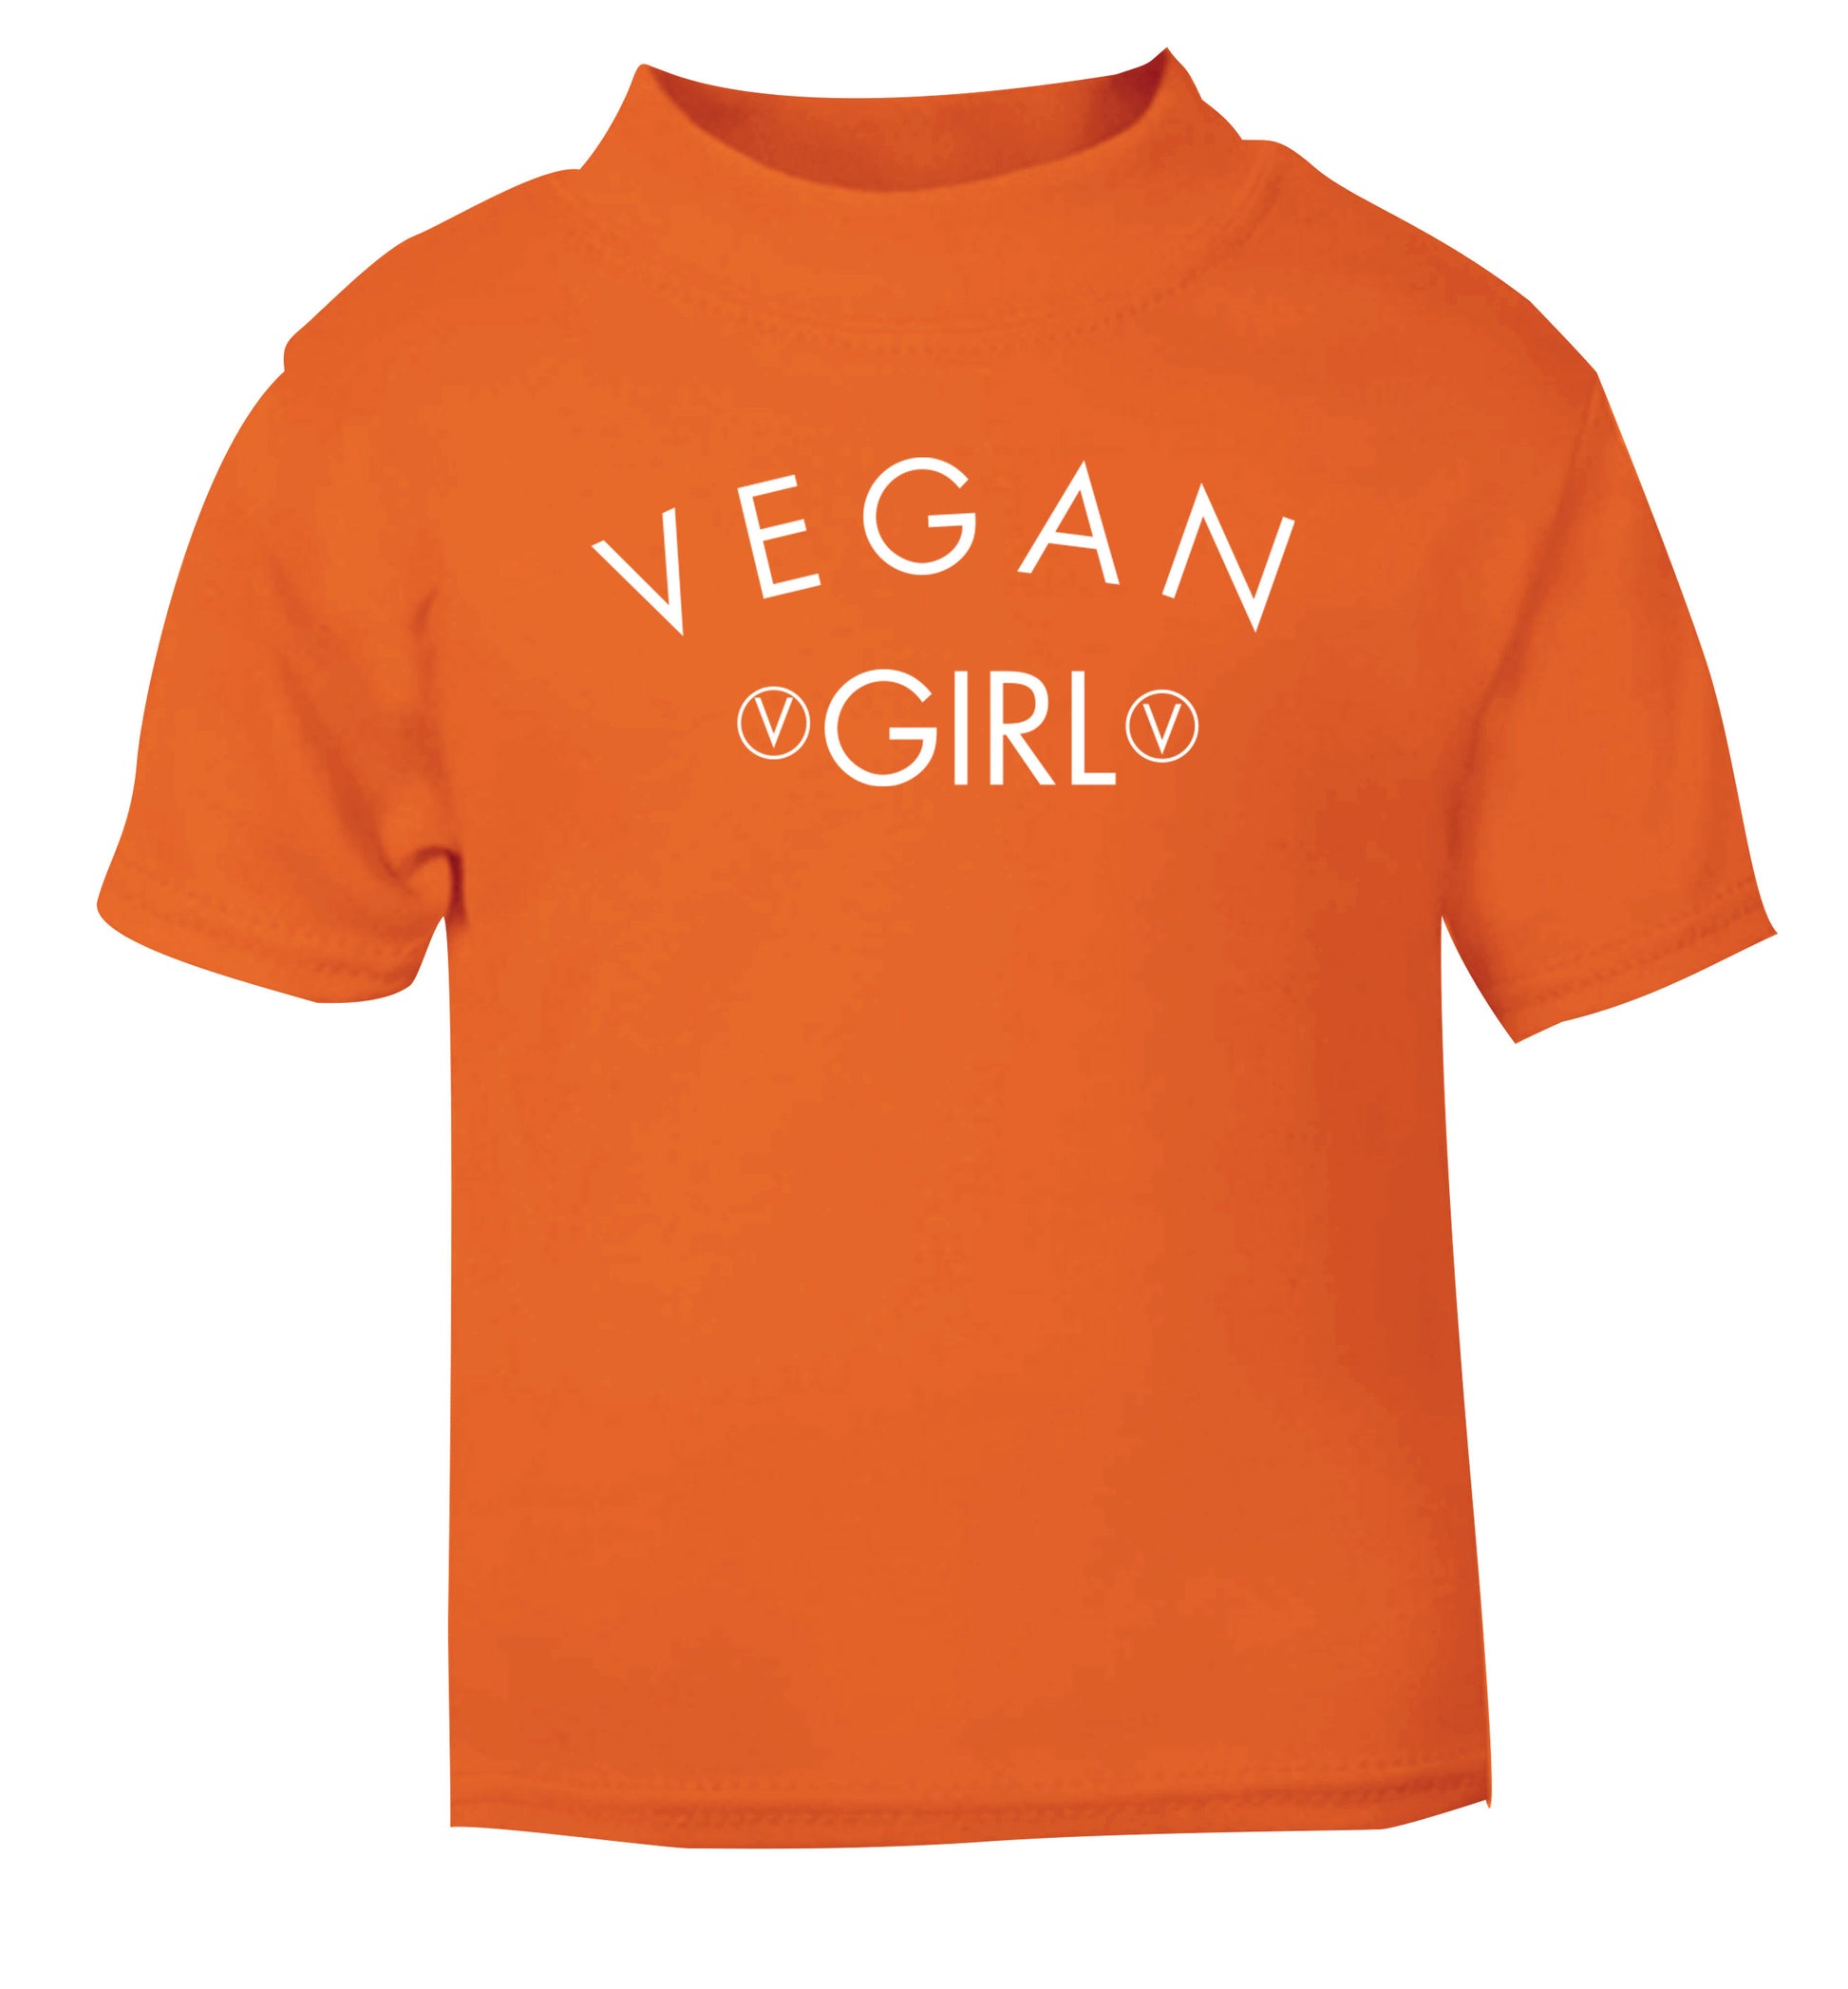 Vegan girl orange Baby Toddler Tshirt 2 Years